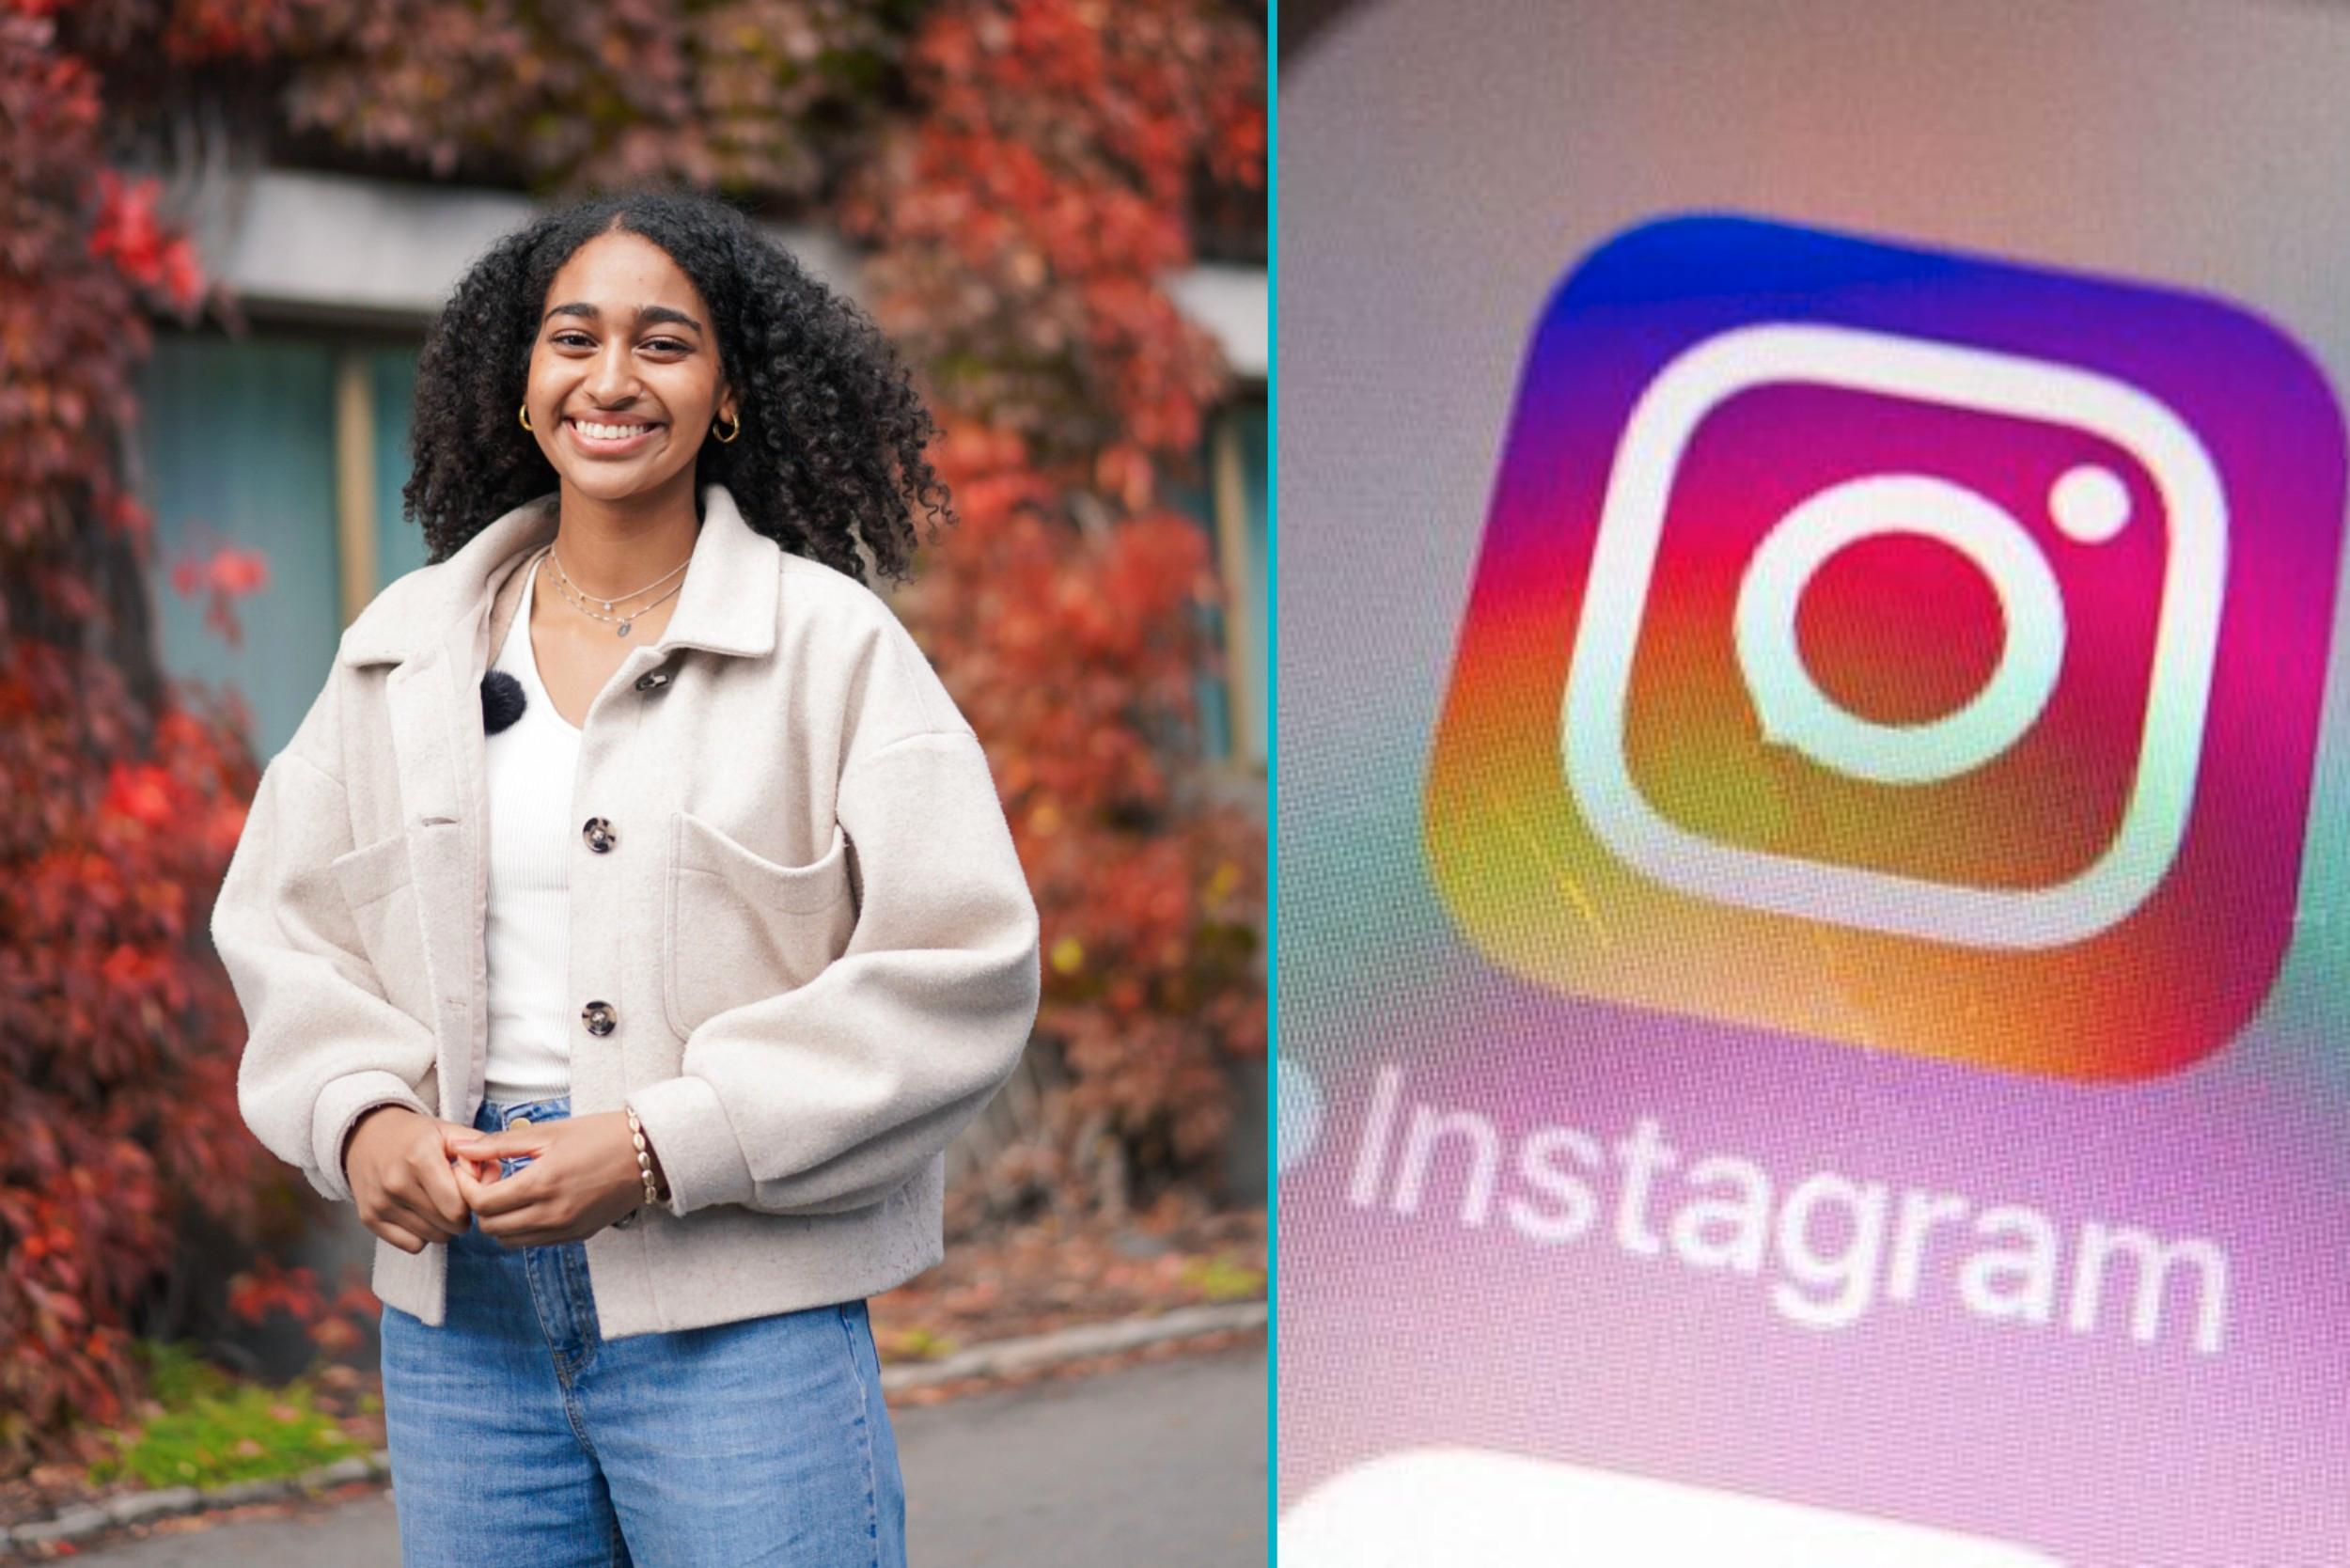 Falske profiler florerer på Instagram. Forrige uke fikk Jasmin Ranginya (23) oppleve å selv bli brukt i svindel på den populære plattformen.